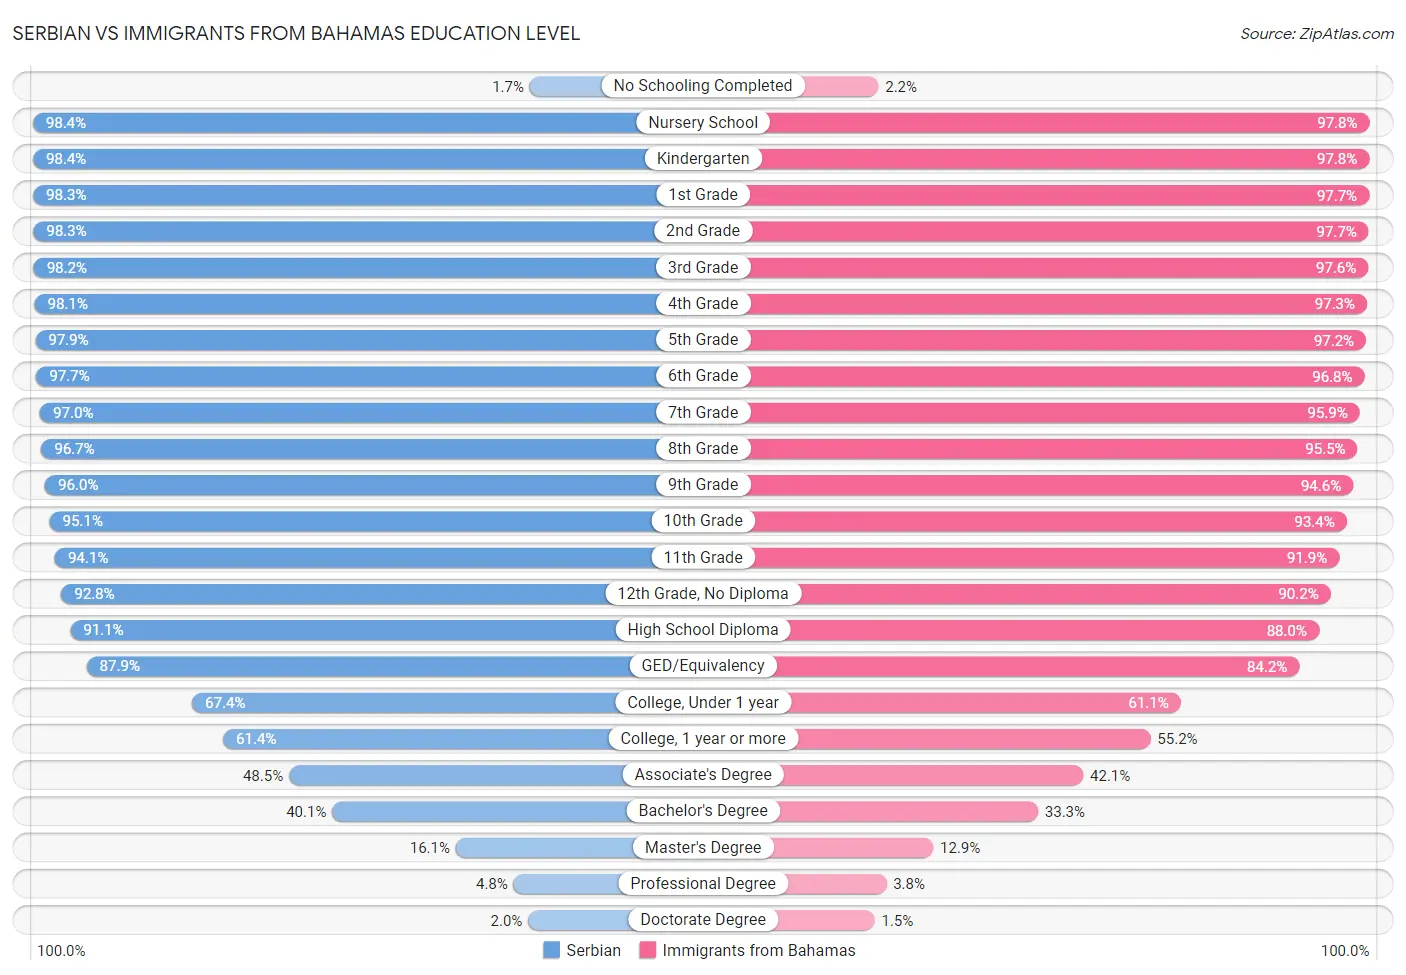 Serbian vs Immigrants from Bahamas Education Level